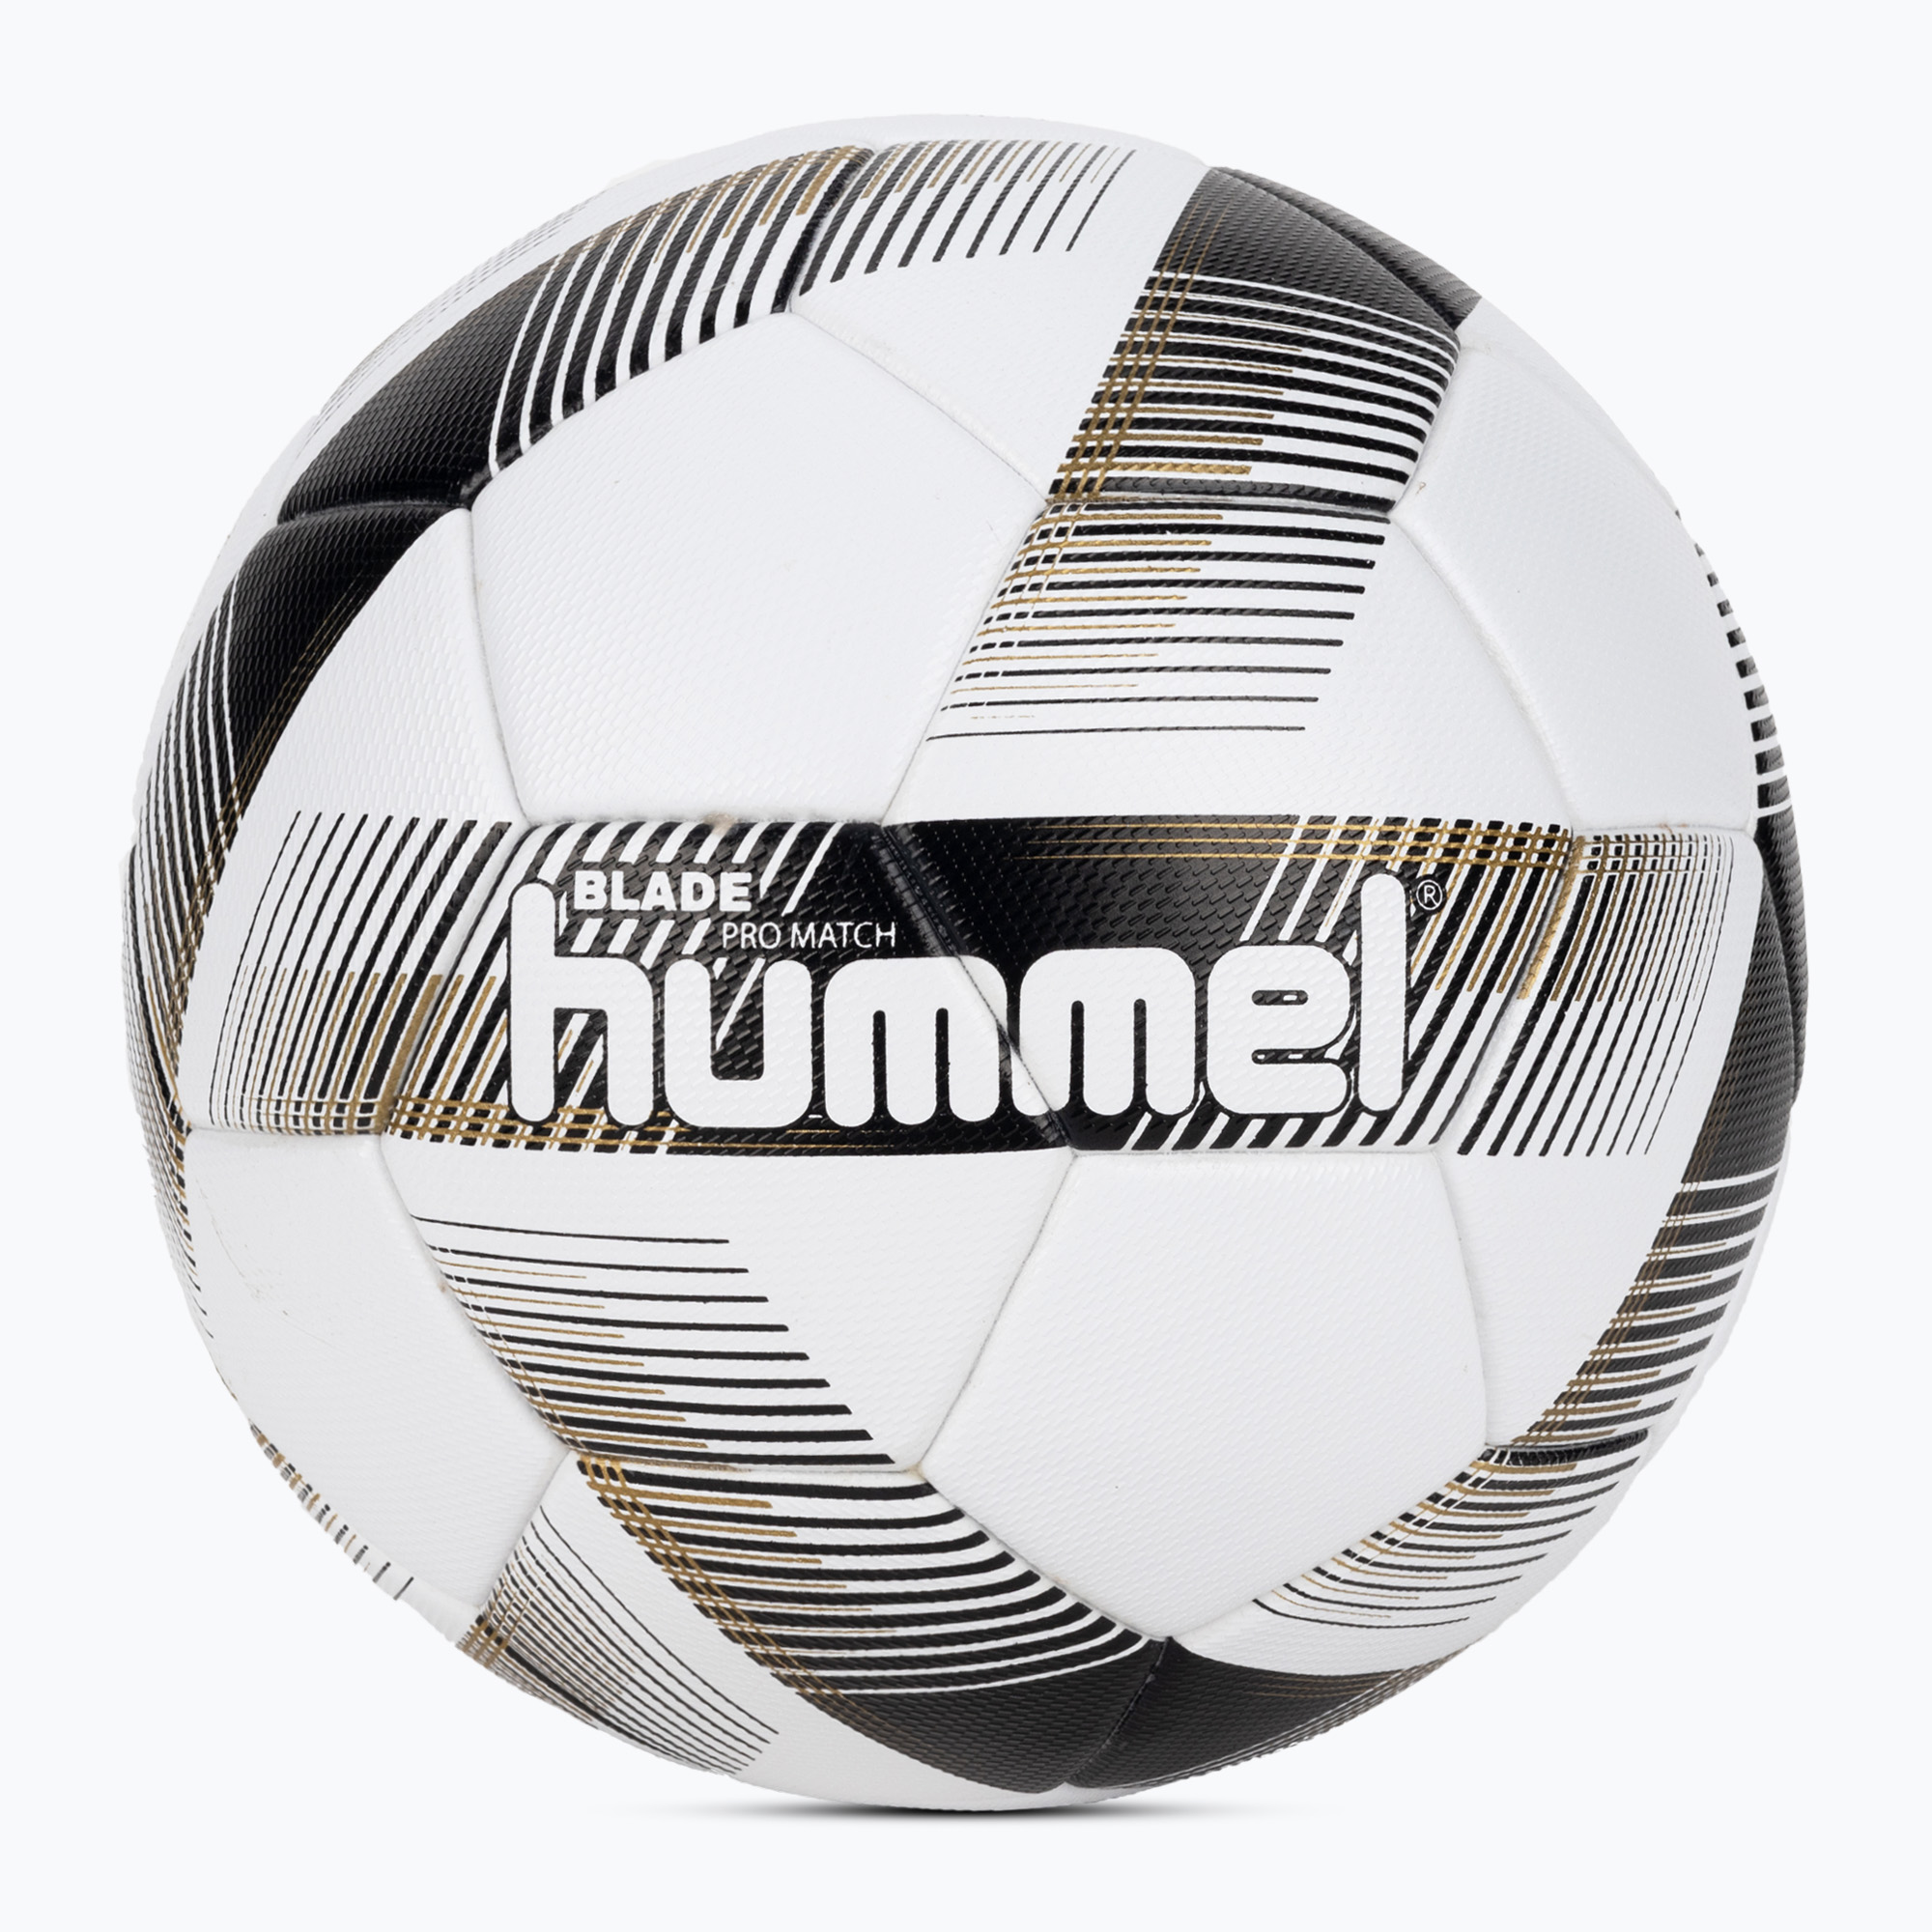 Hummel Blade Pro Match FB futbalová lopta biela/čierna/zlatá veľkosť 5